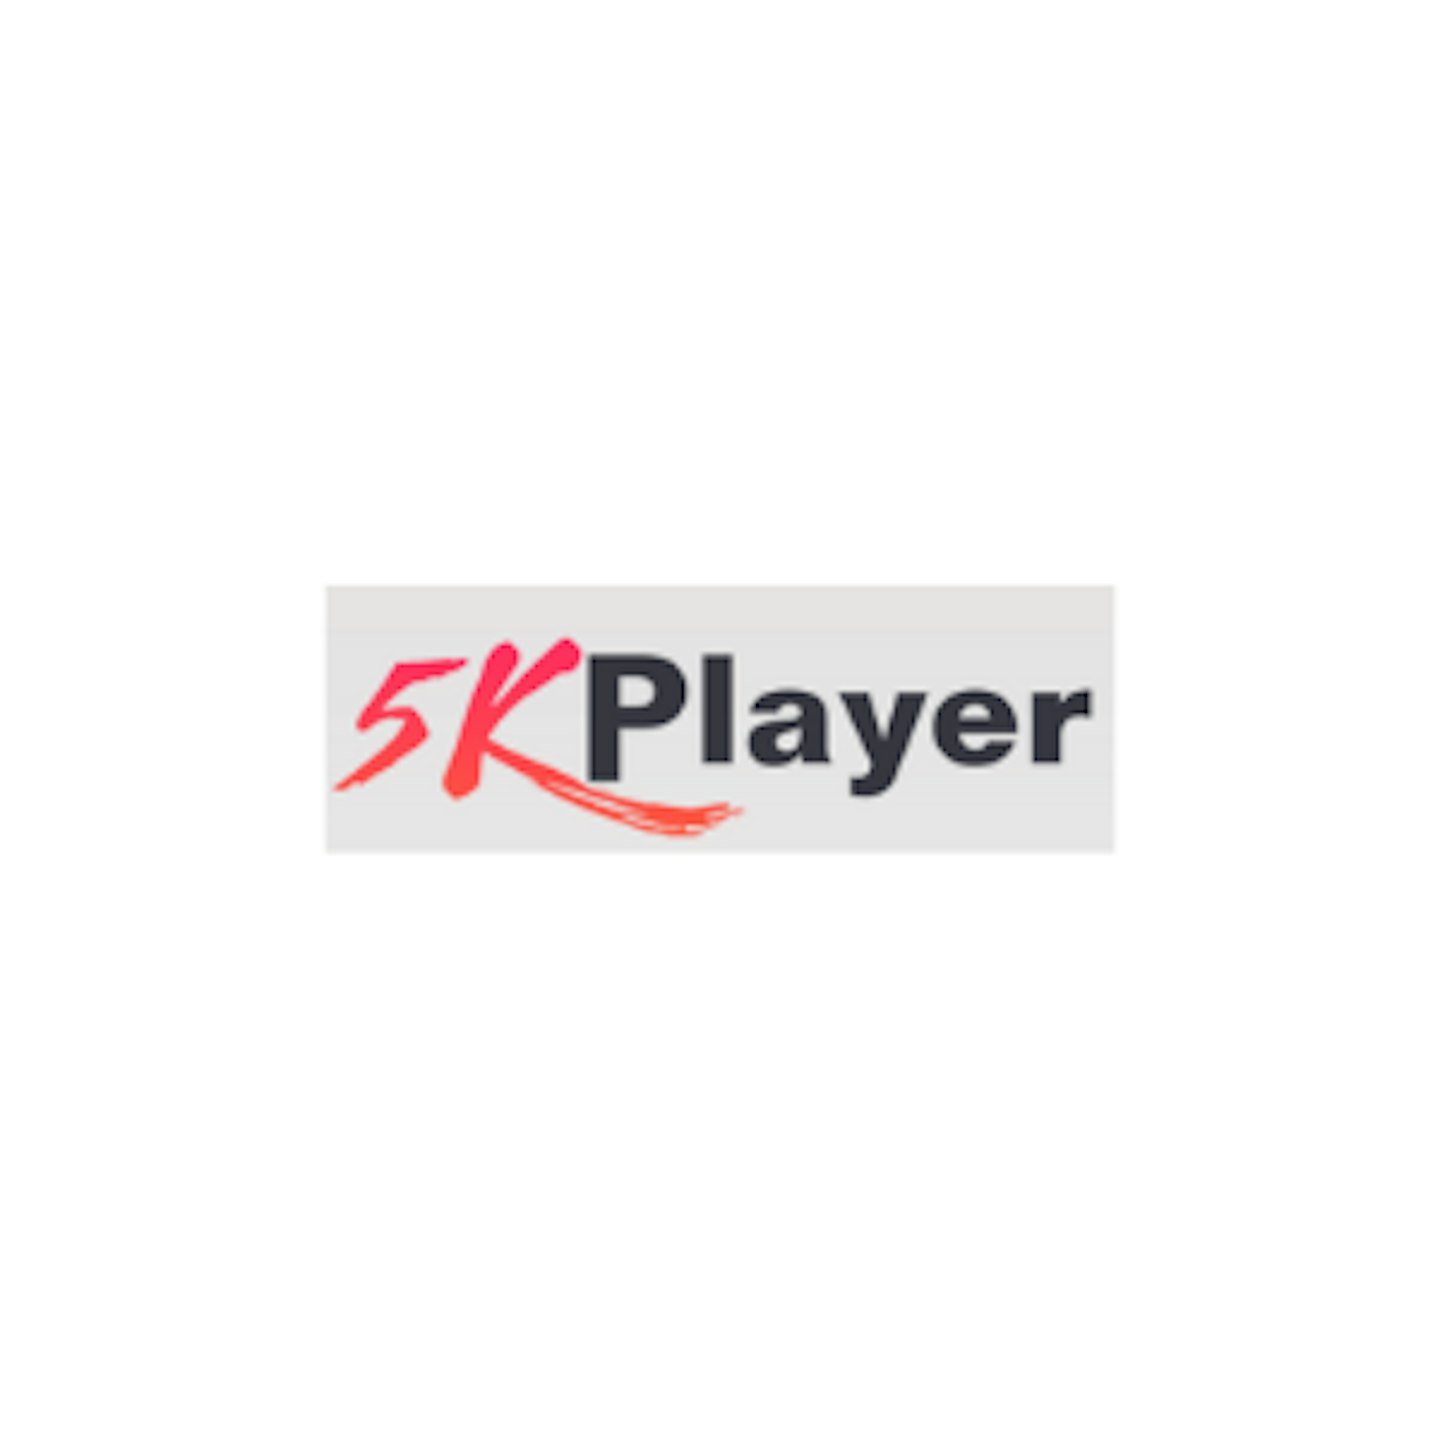 5K Player